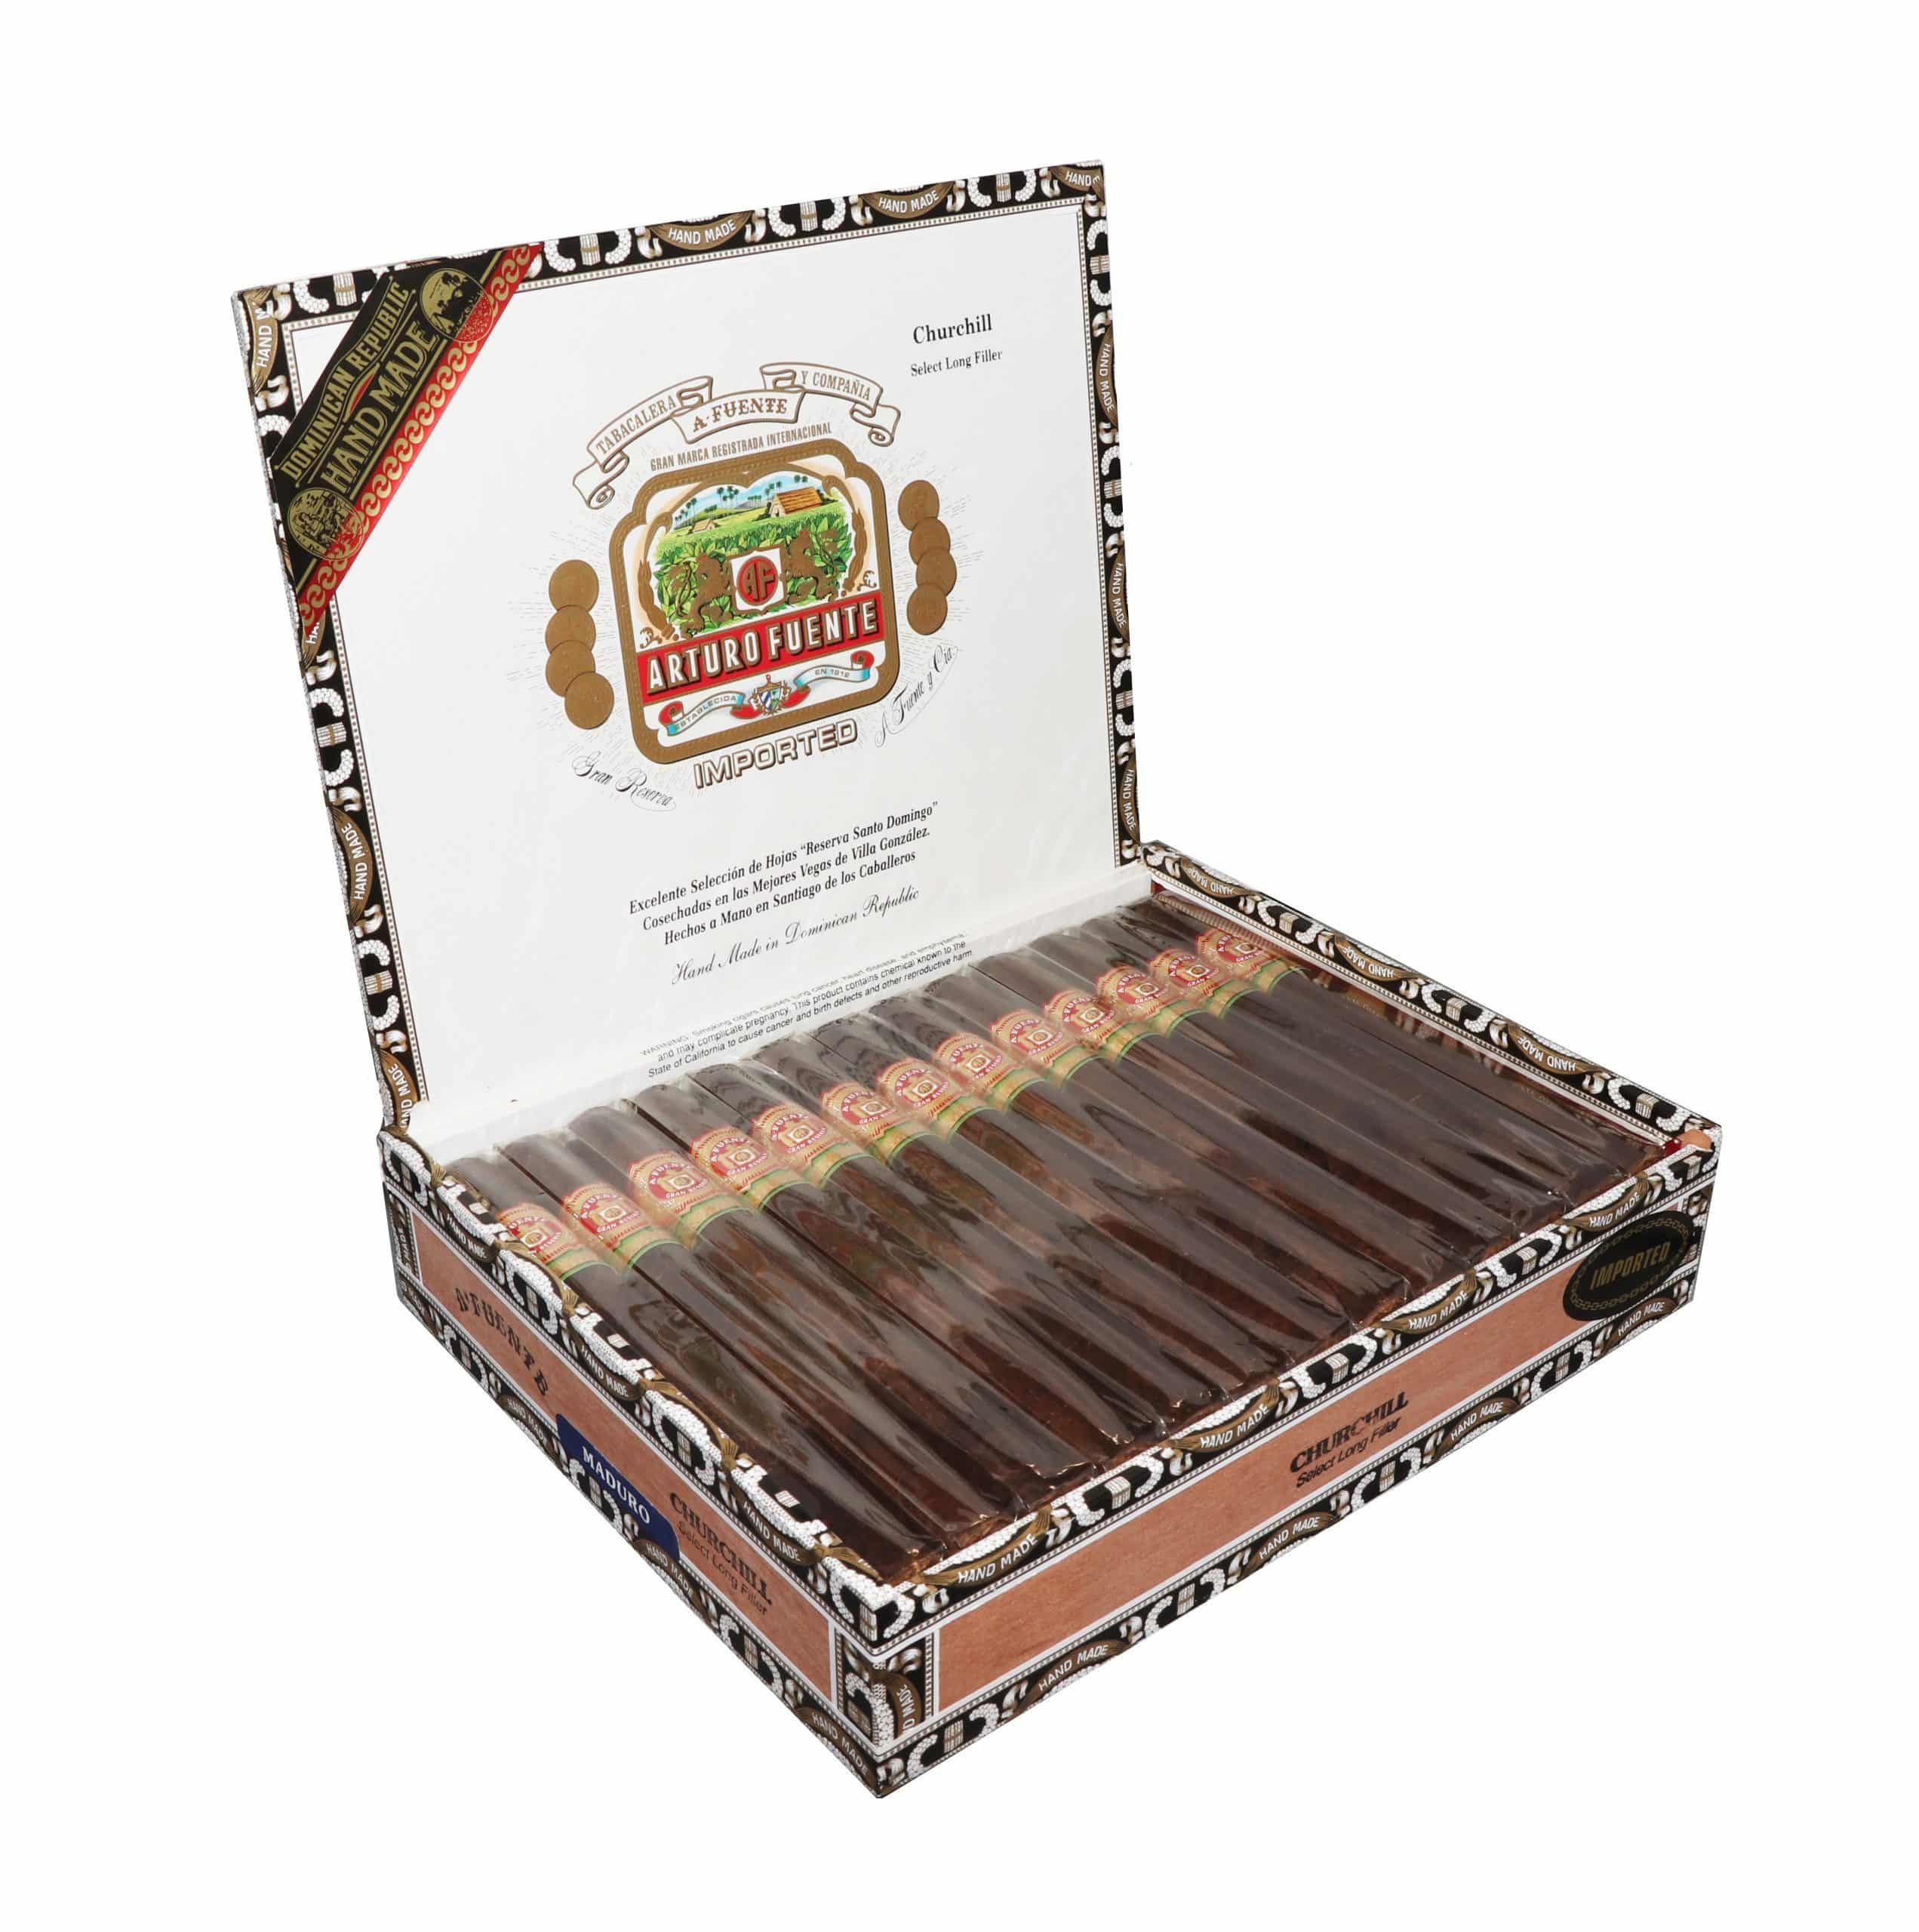 Open box of 25 count Arturo Fuente Gran Reserva Churchill Maduro cigars